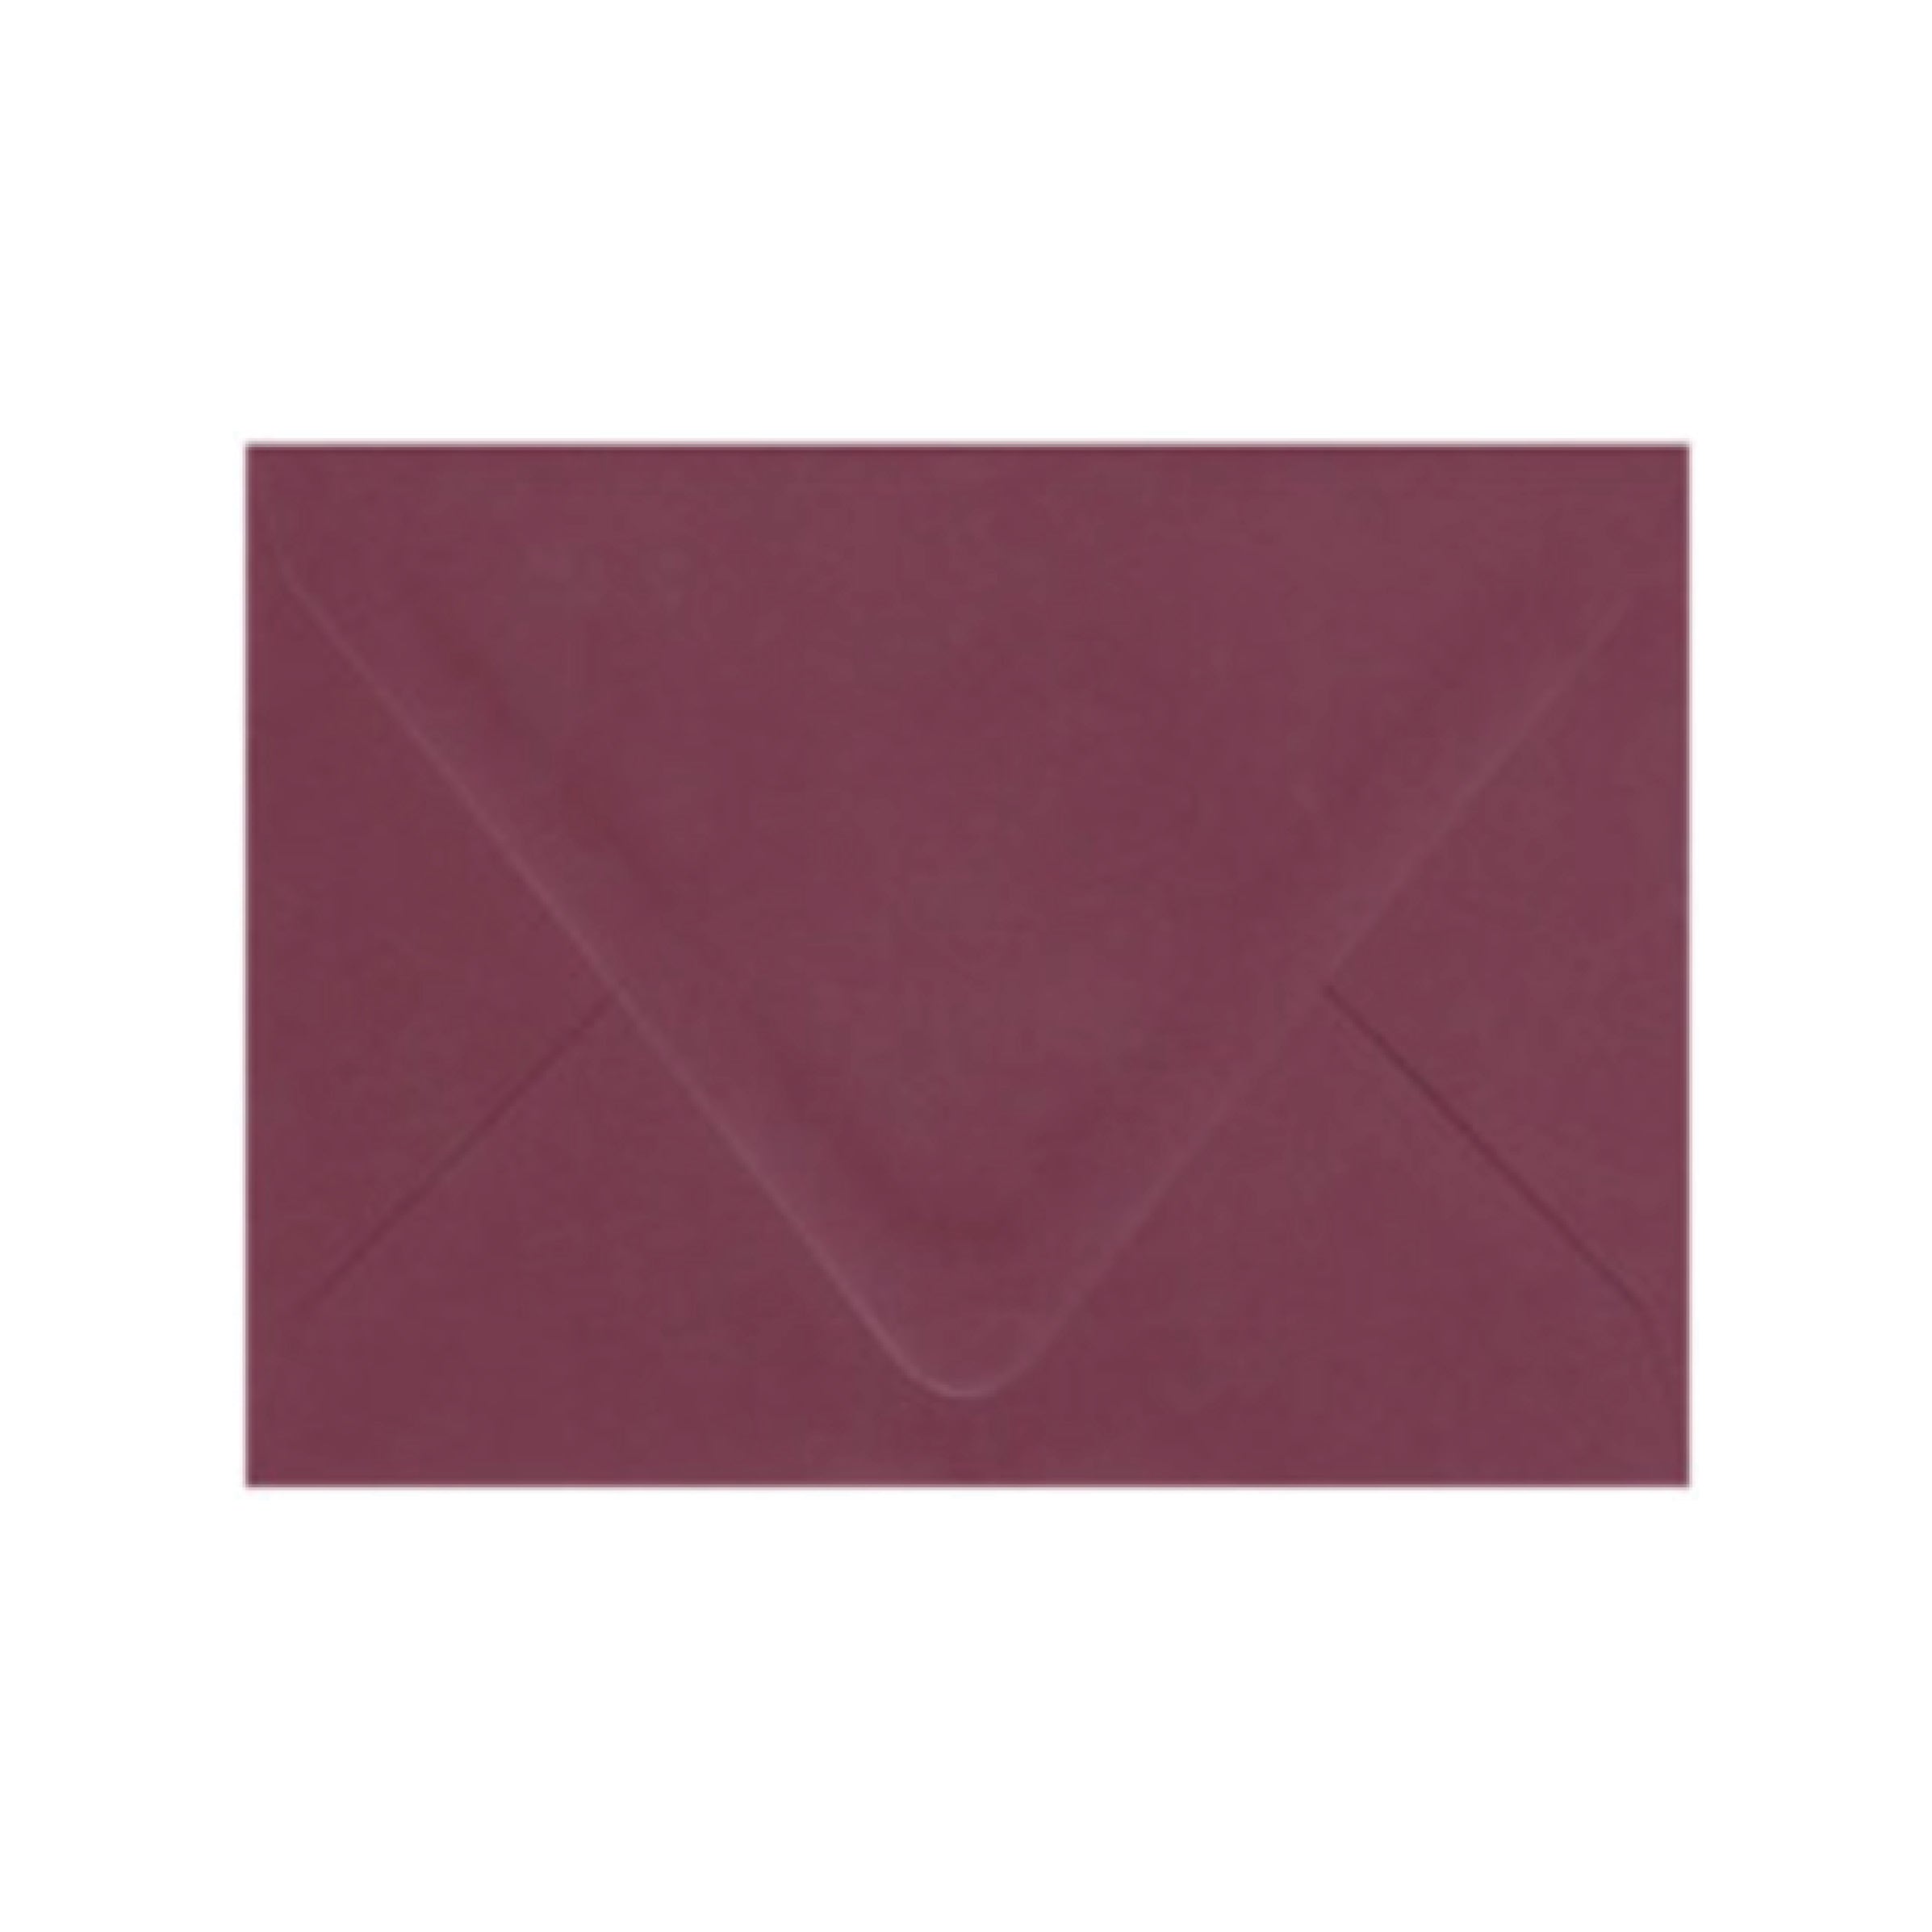 Burgundy Envelopes - Pack of 25